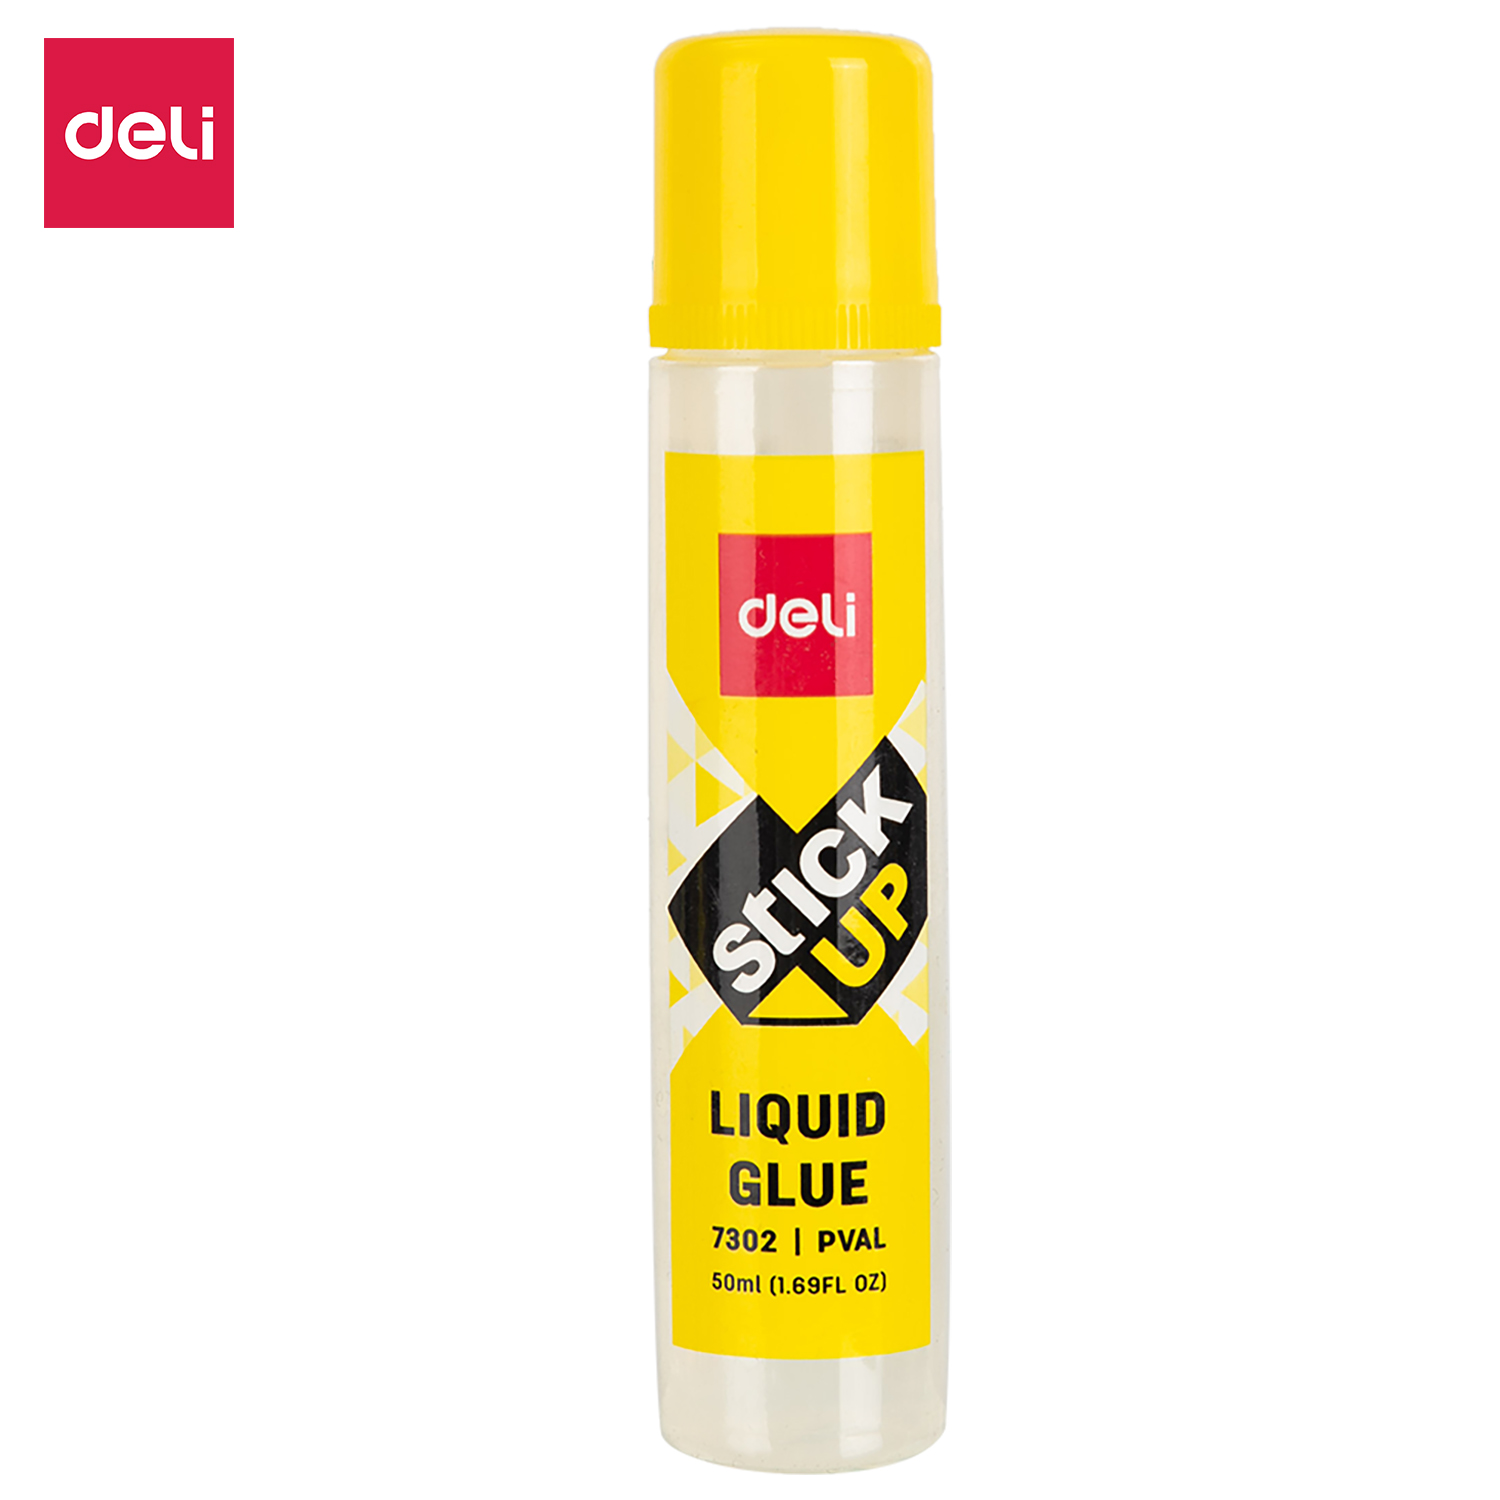 Deli Liquid Adhesive Glue, Liquid Fusion Glue Manufacturer